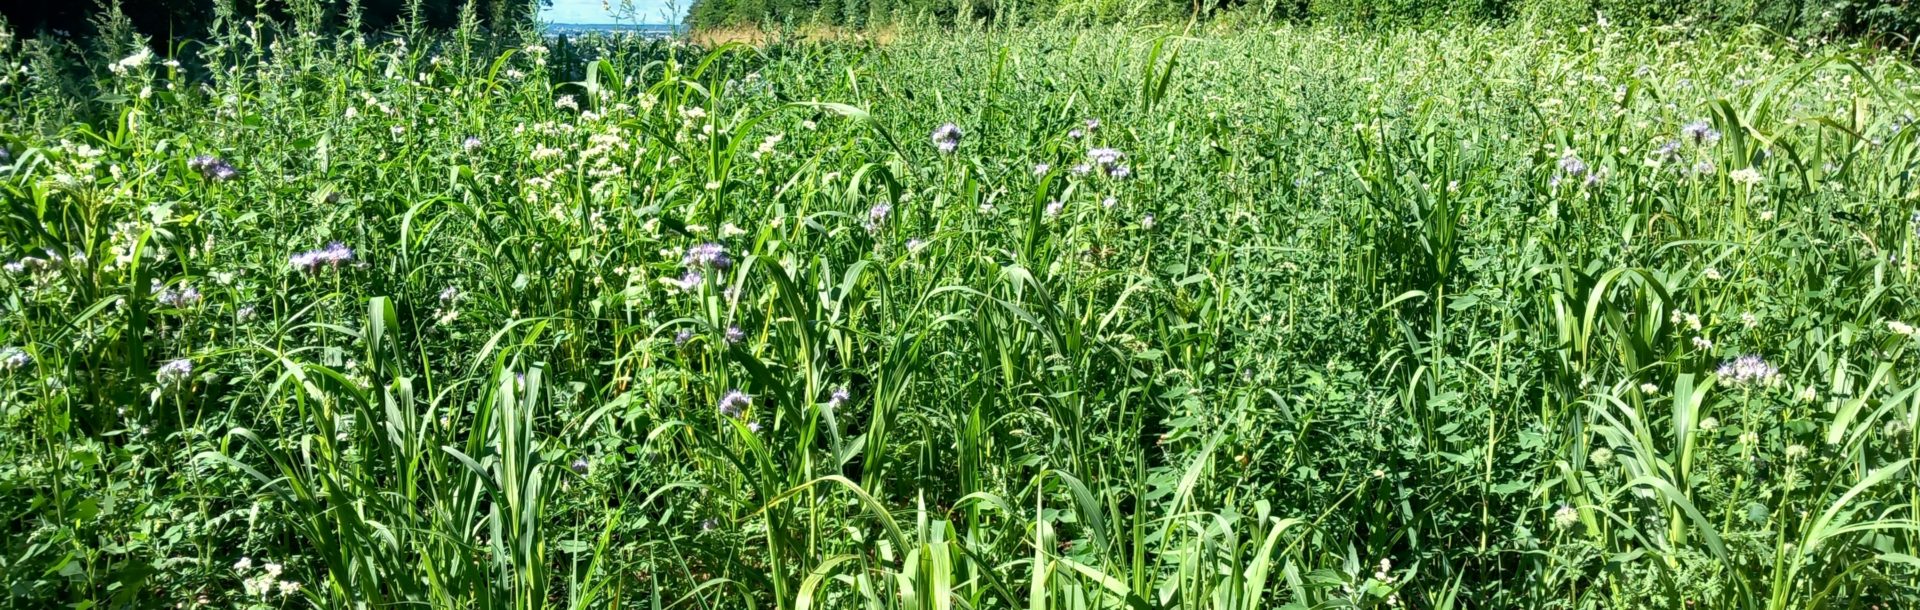 Gestion durable des bords de champs : préservation de la biodiversité et intérêts agricoles – 14